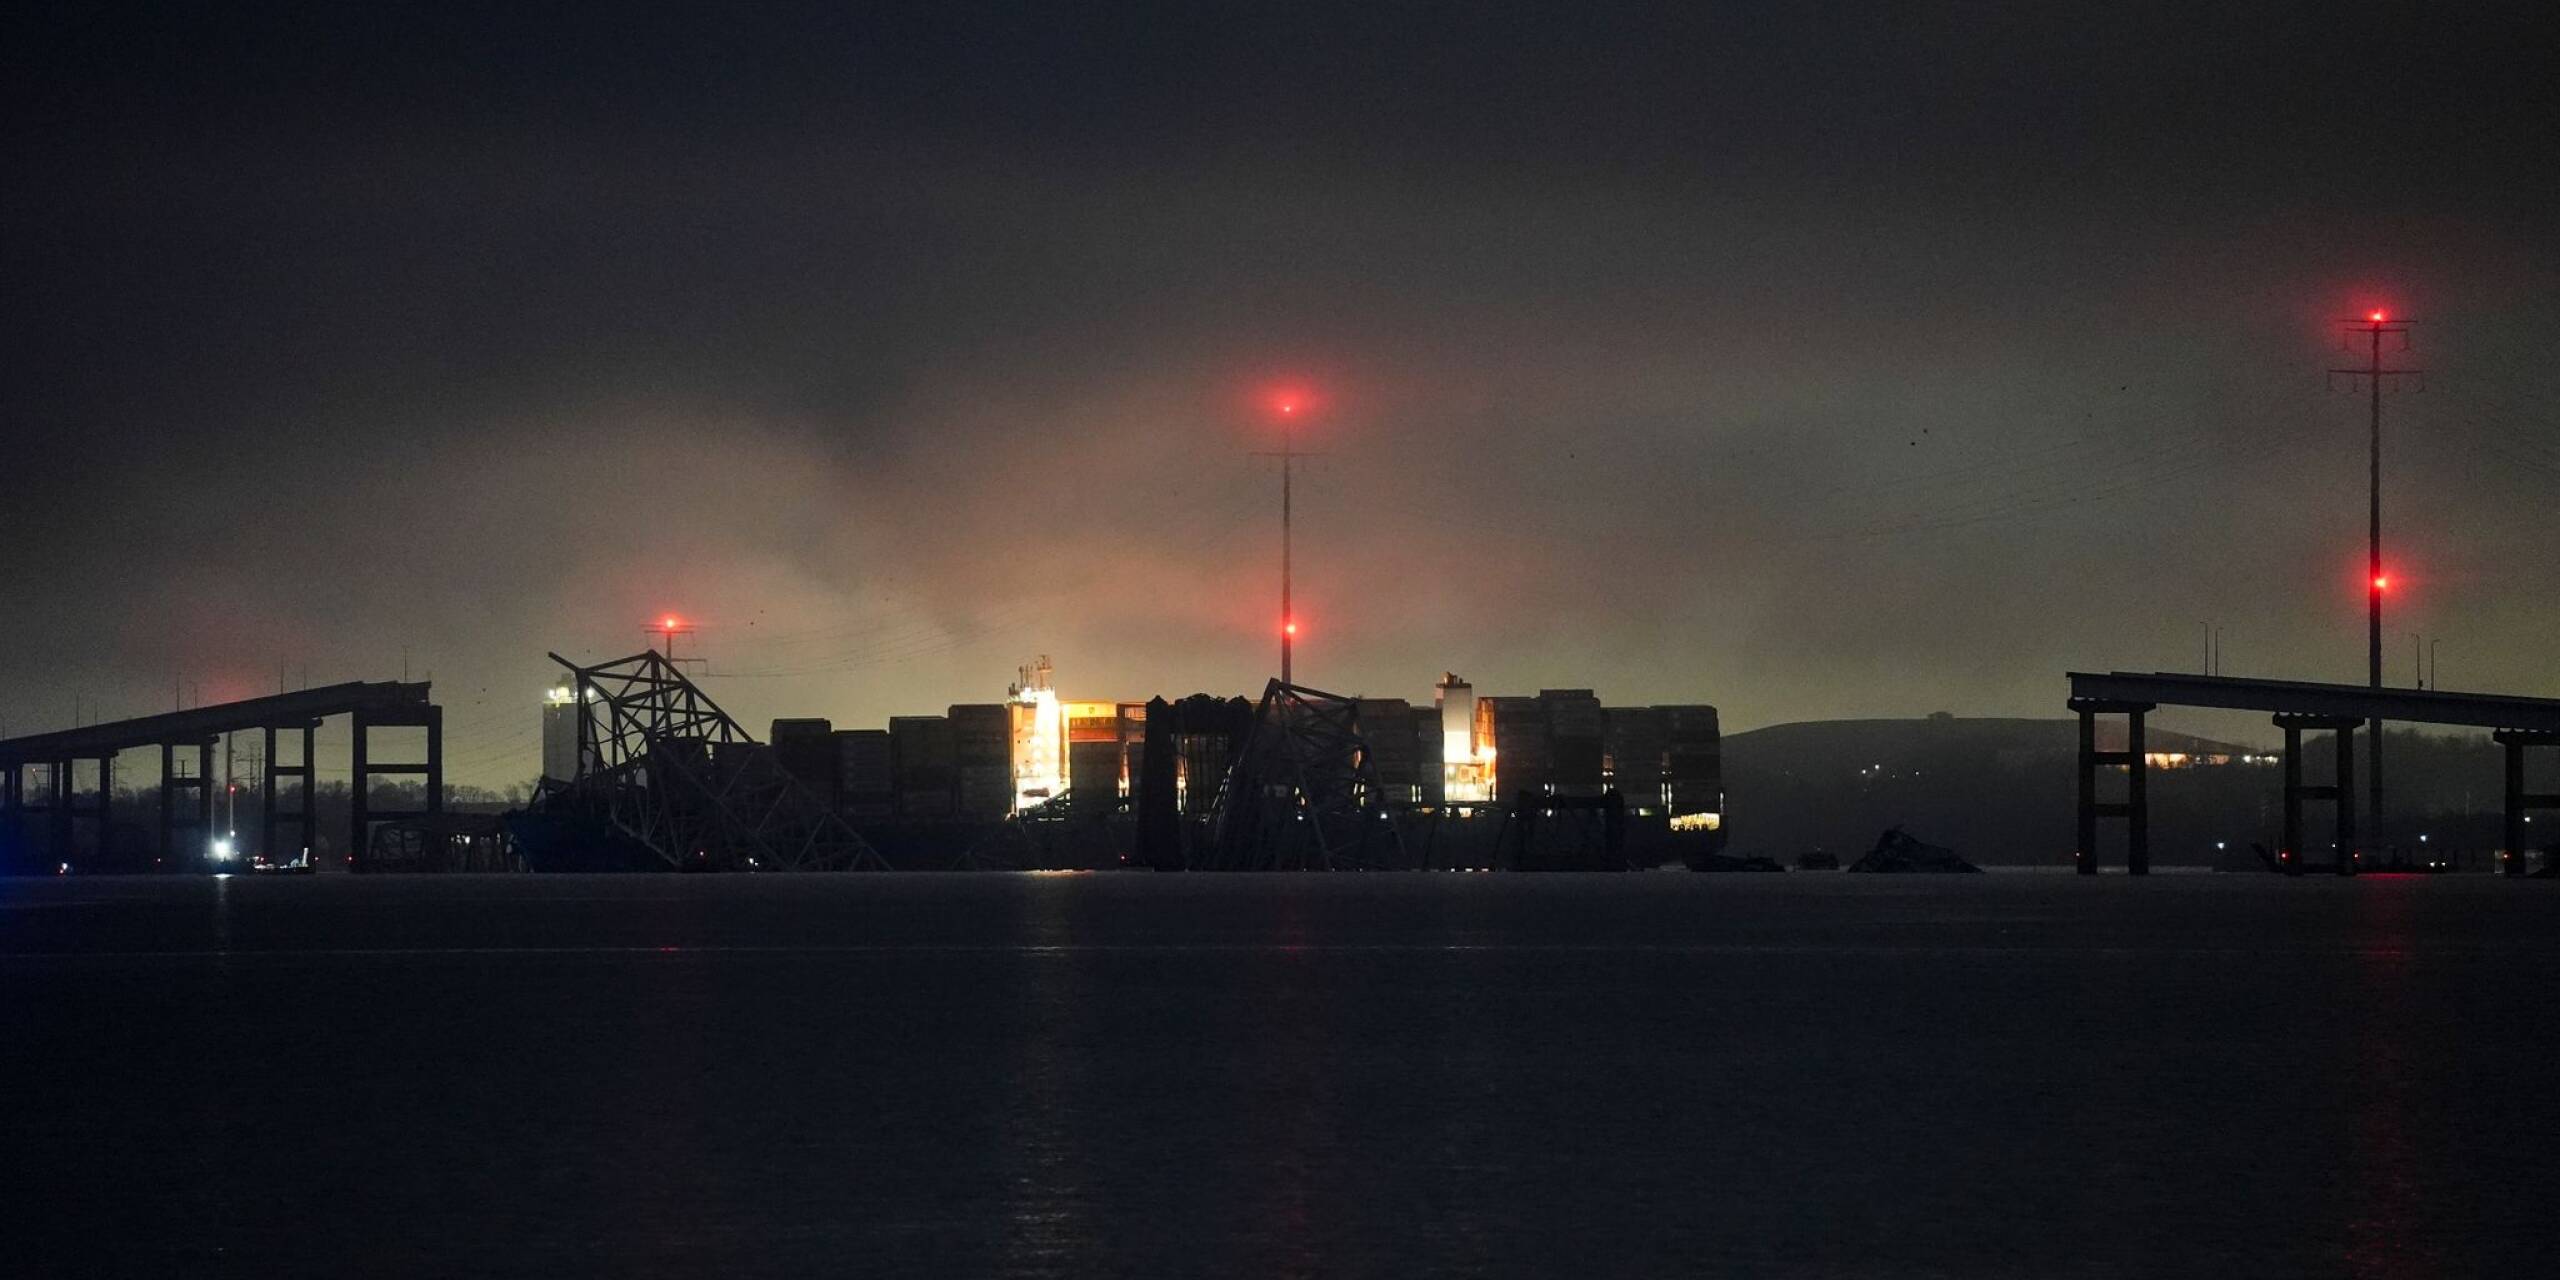 Das rund 290 Meter lange Containerschiff «Dali» hat in der Nacht zu Dienstag im Hafen von Baltimore einen Stützpfeiler der vierspurigen Francis Scott Key Bridge gerammt und das mehr als 2,5 Kilometer lange Bauwerk so zum Einsturz gebracht.